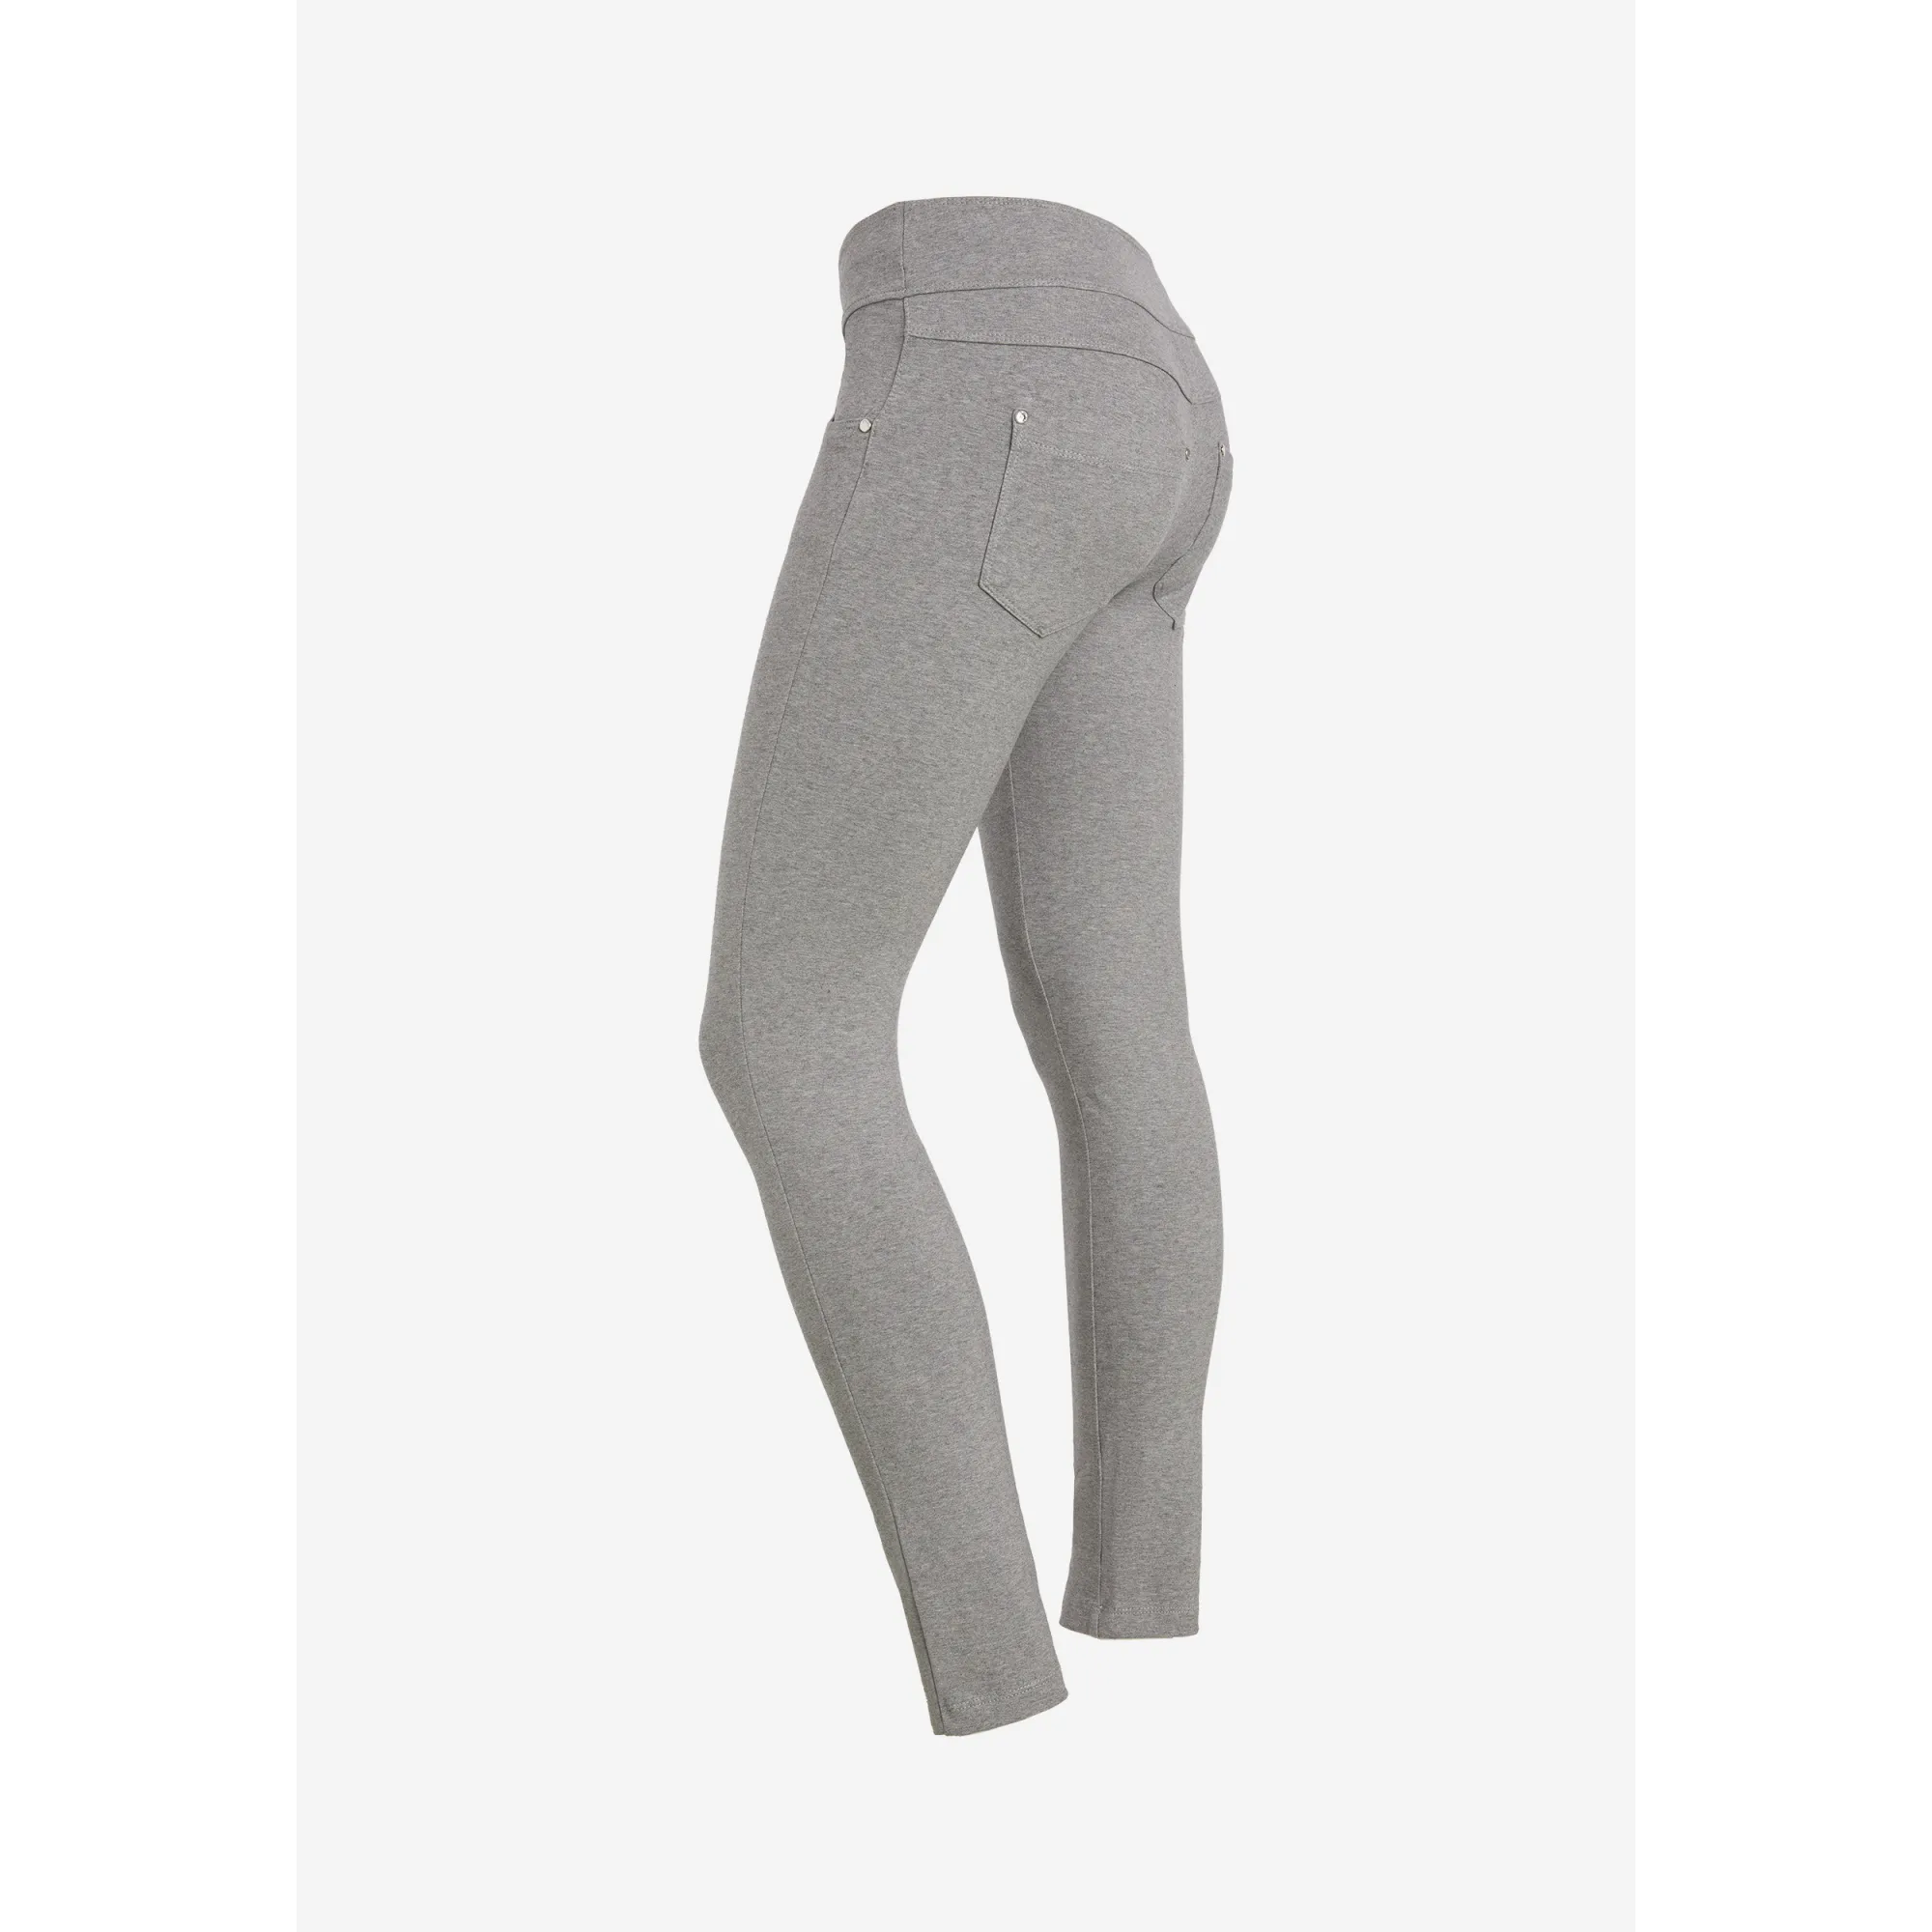 Freddy N.O.W.® Yoga Damen Comfort Hose - Mid Waist Skinny - Grau meliert - H400